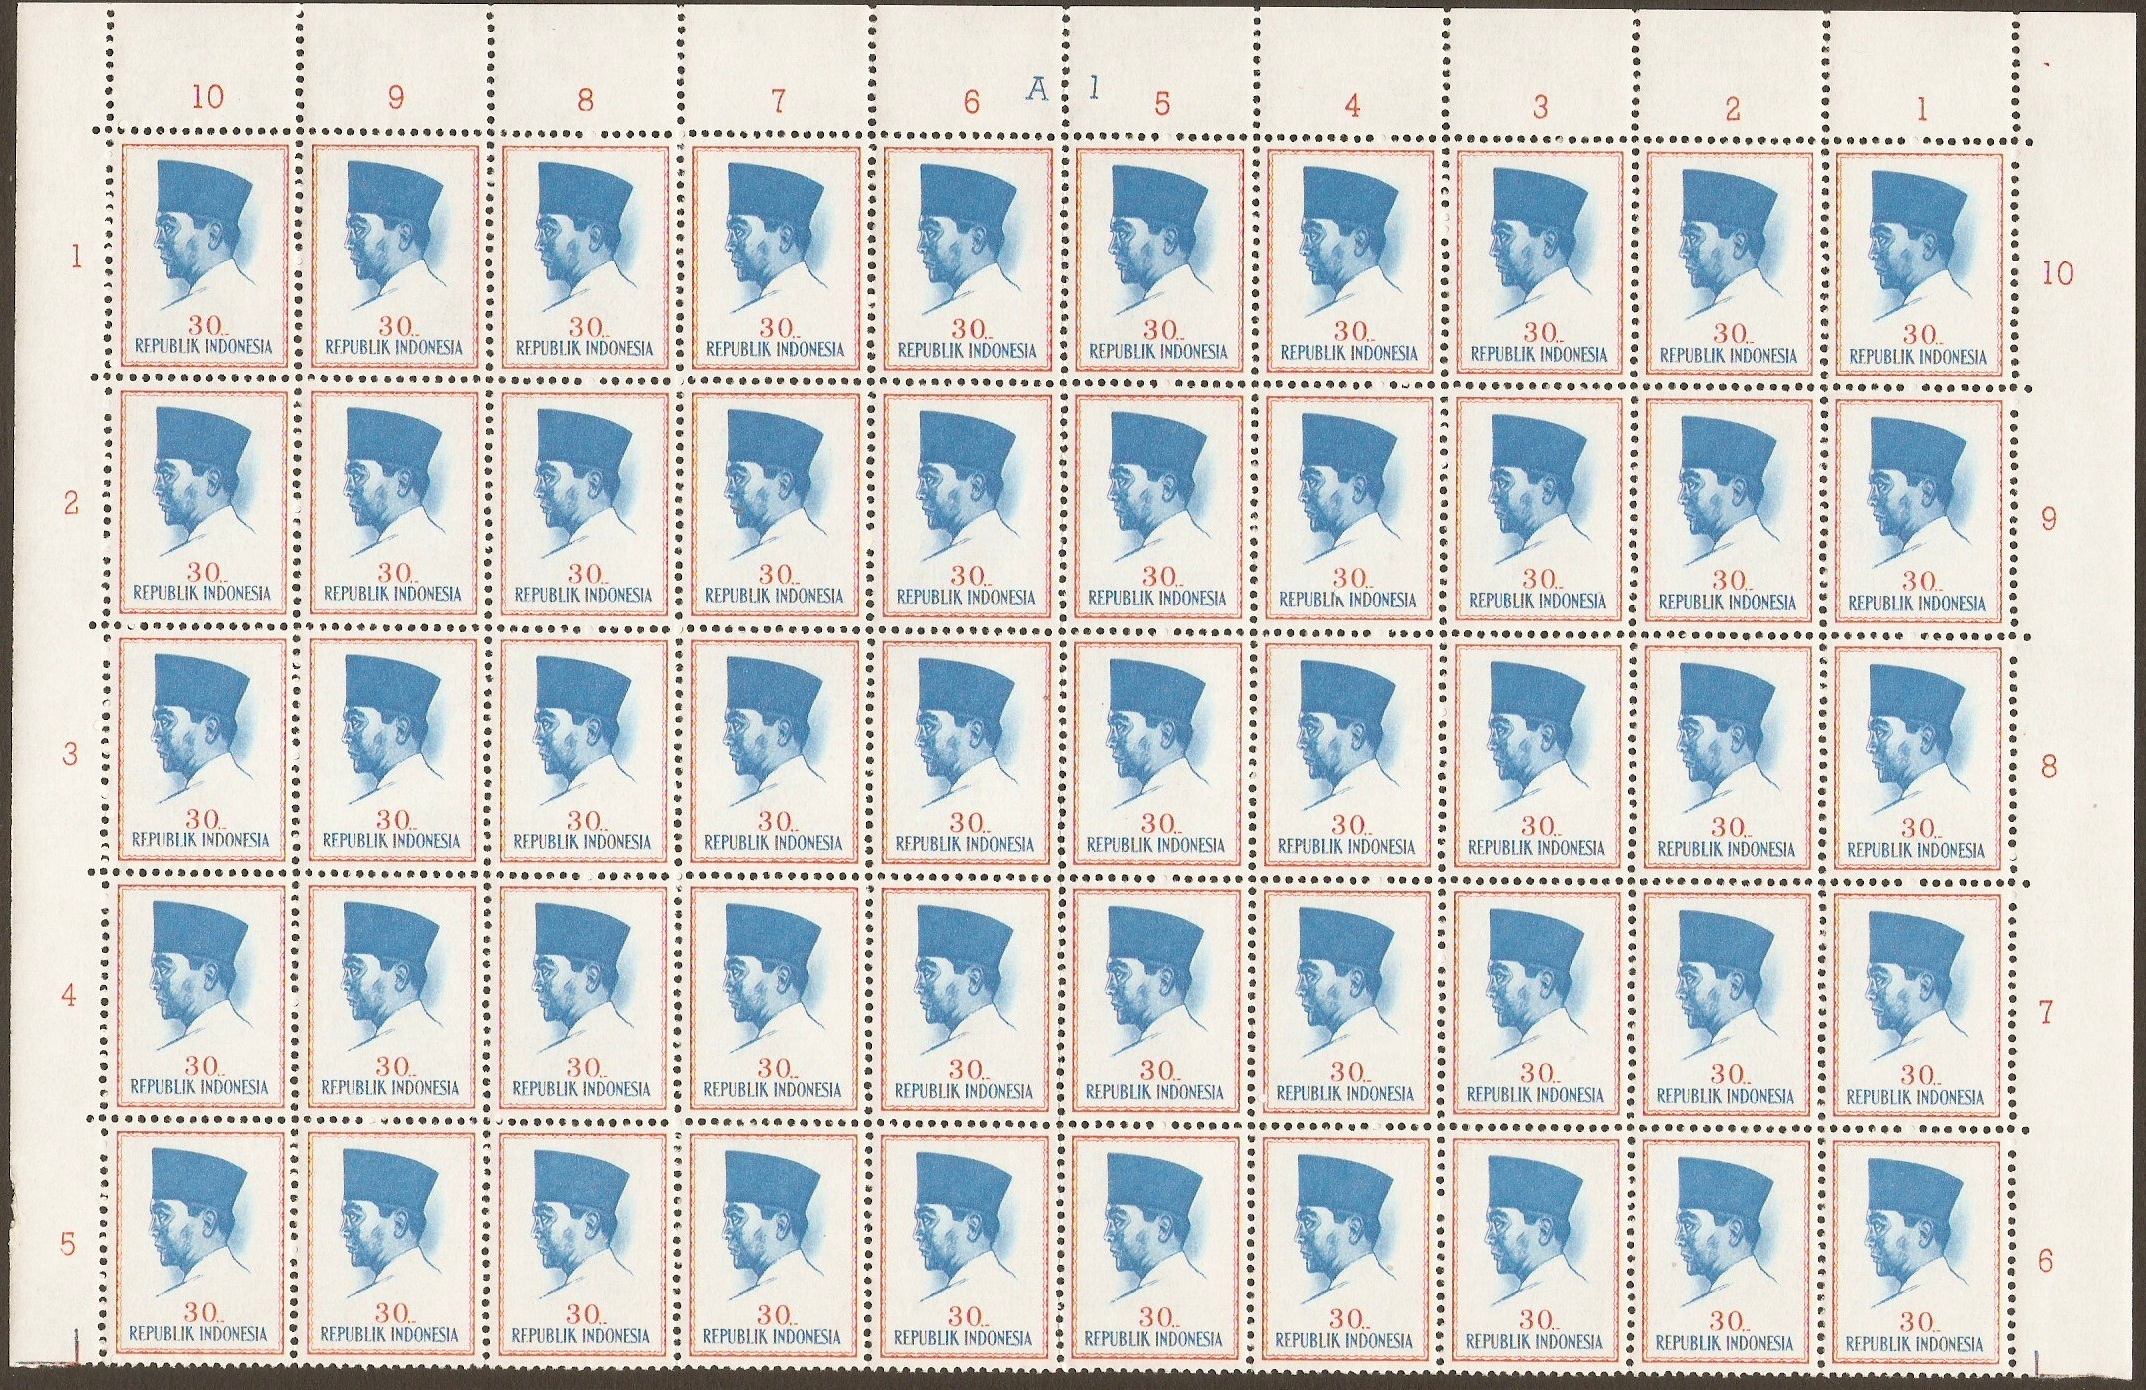 Indonesia 1964 30r Blue and orange-Pres. Sukarno Series. SG990.